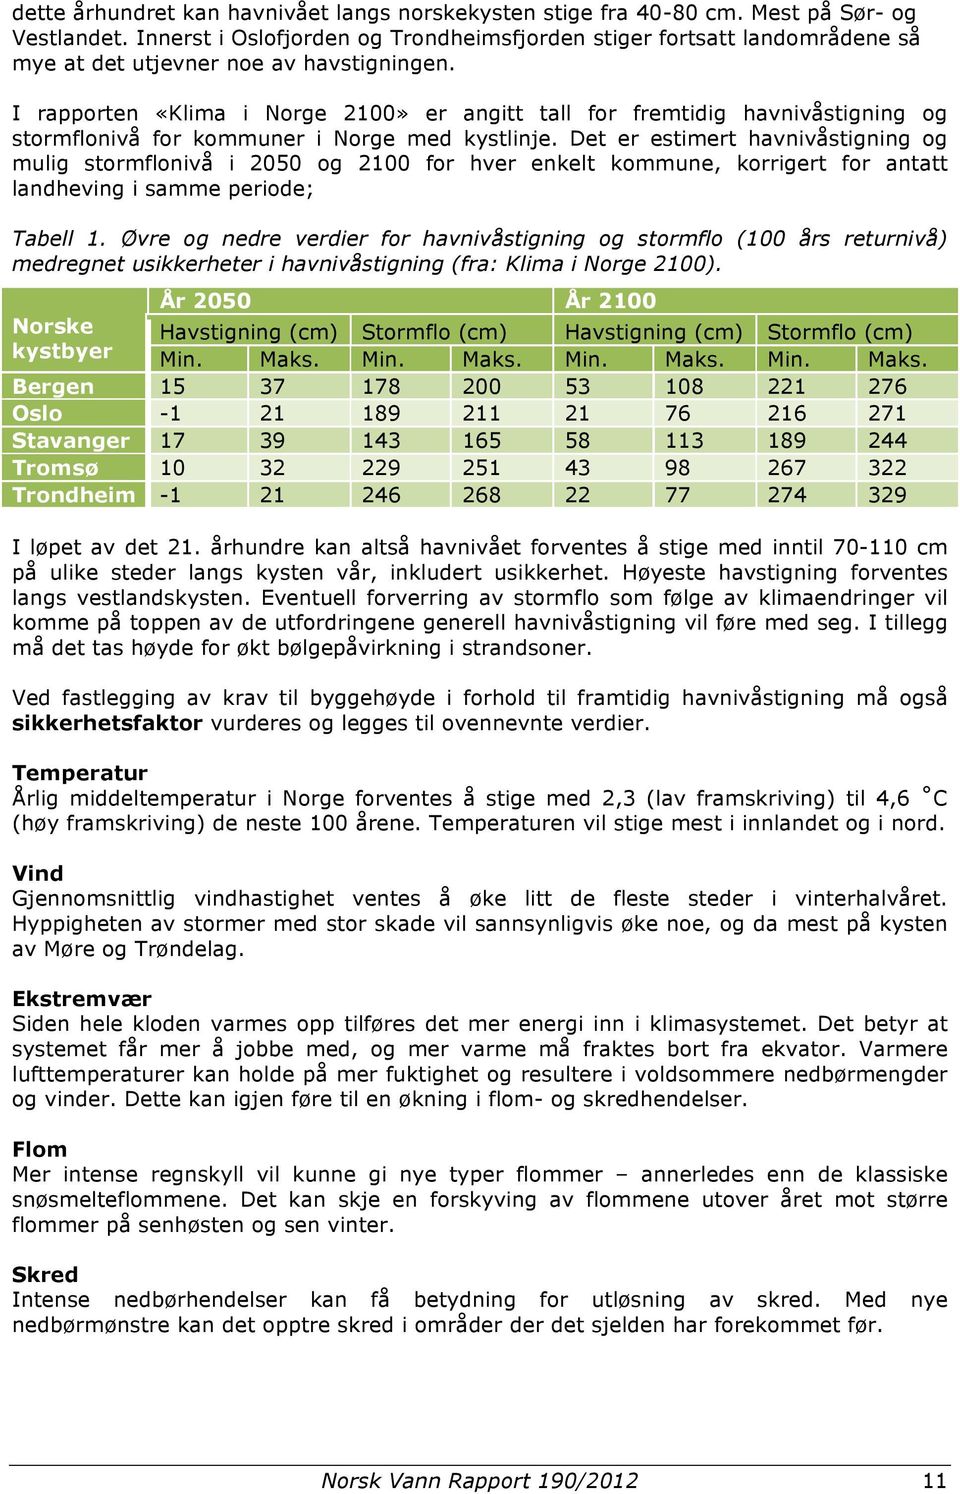 I rapporten «Klima i Norge 2100» er angitt tall for fremtidig havnivåstigning og stormflonivå for kommuner i Norge med kystlinje.